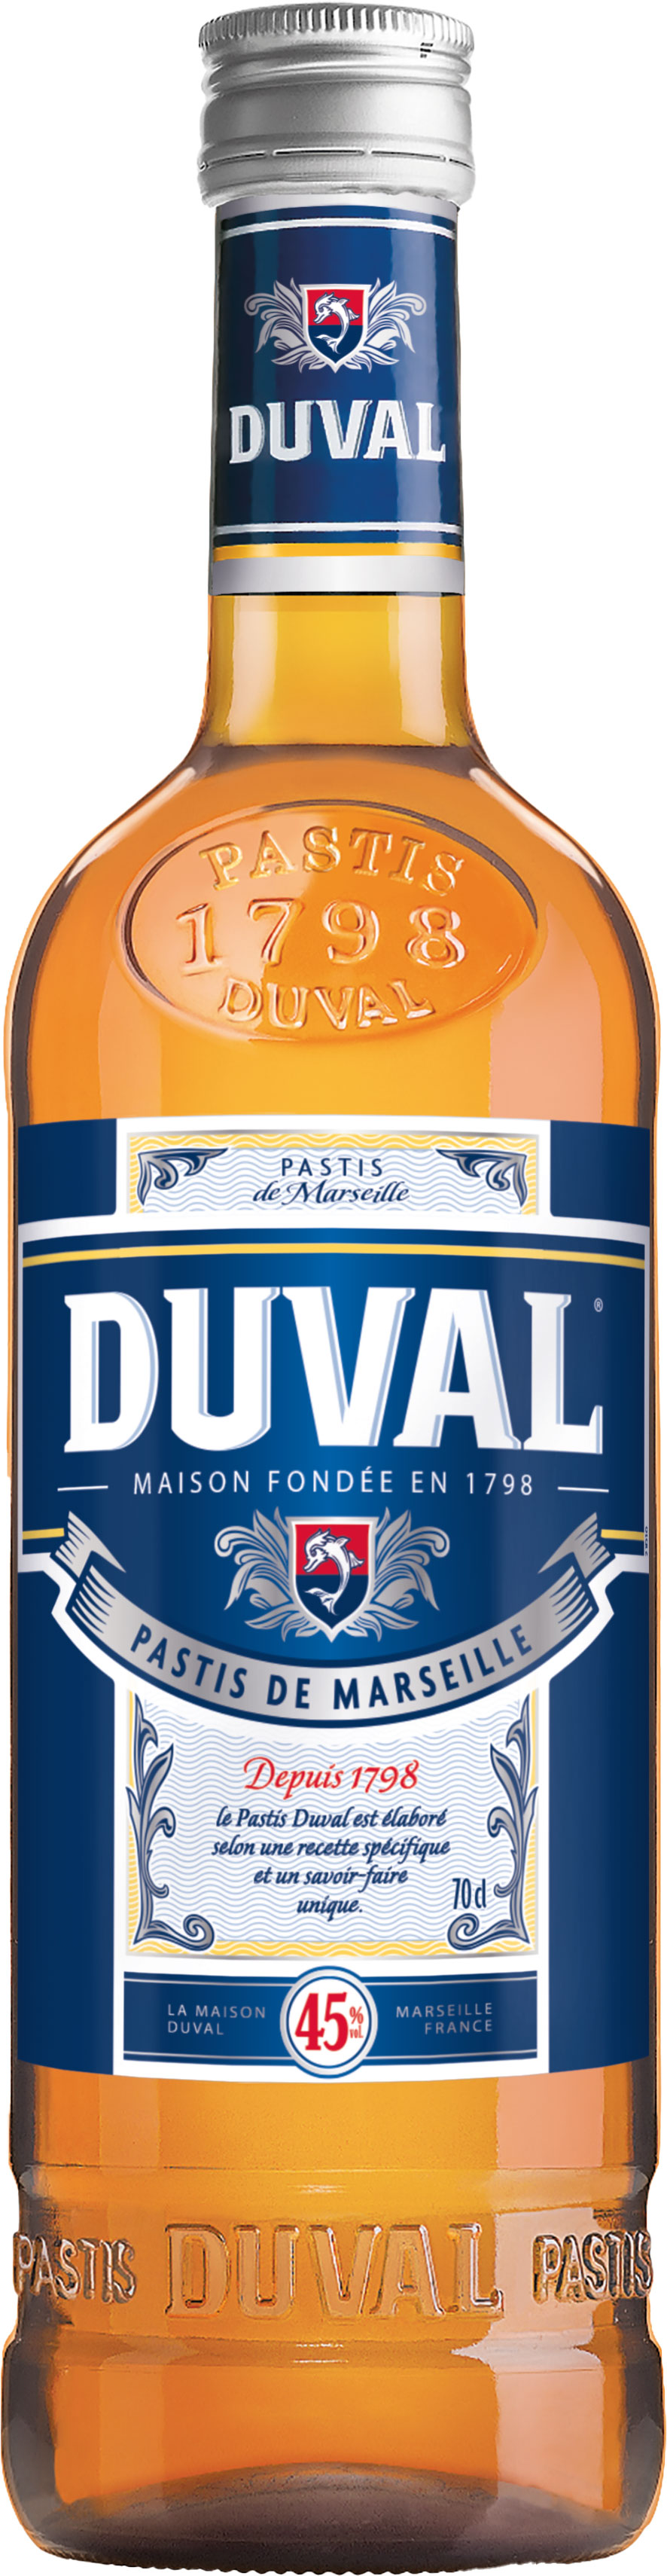 Duval Pastis vol. de 0,7 Marseille 45% | l Schneekloth